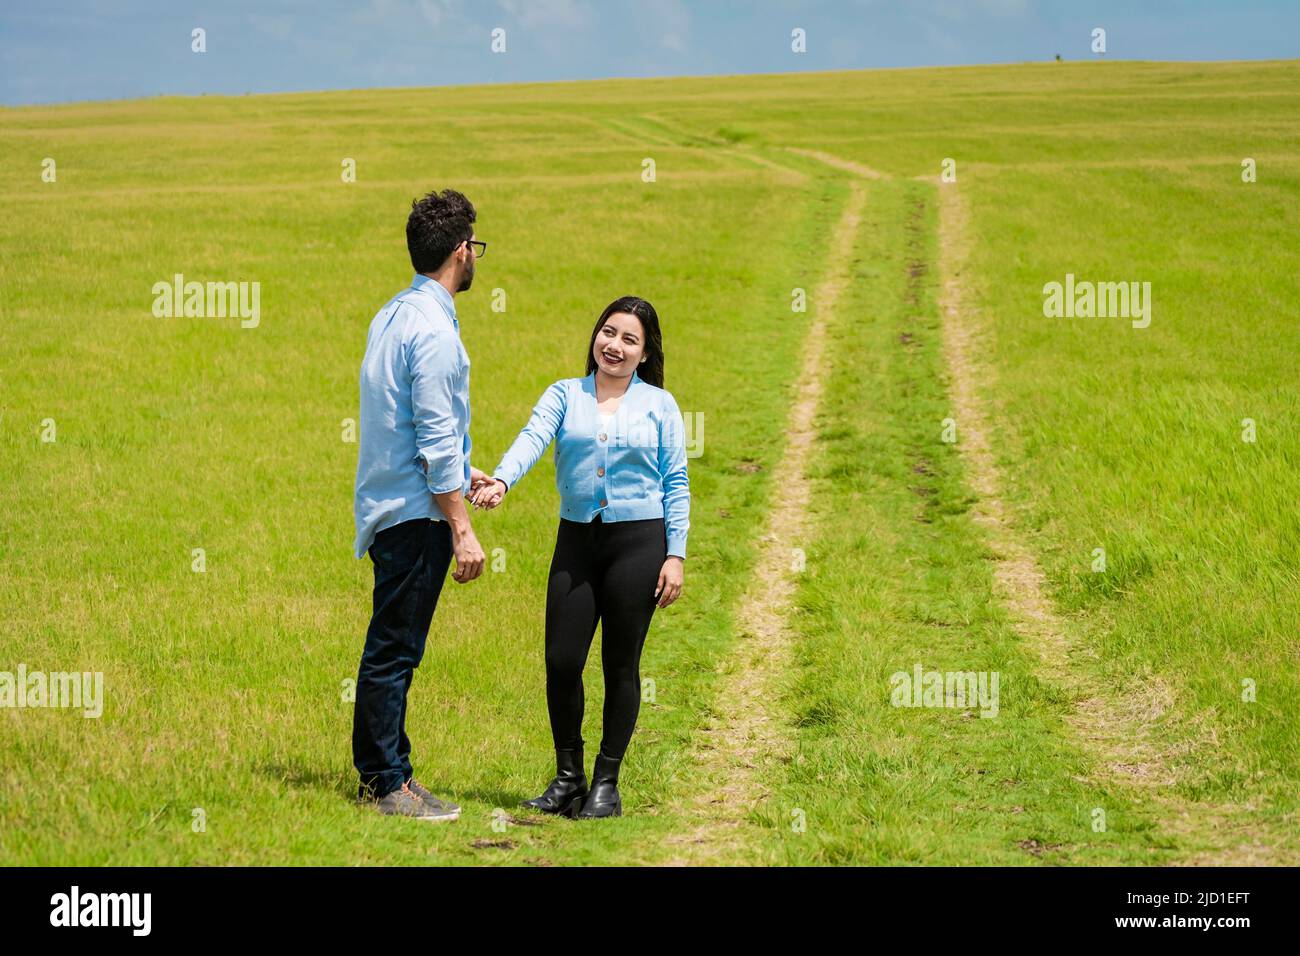 Deux personnes tenant les mains dans le champ, beau couple tenant les mains regardant l'un l'autre dans le champ, deux amoureux dans le champ tenant les mains Banque D'Images